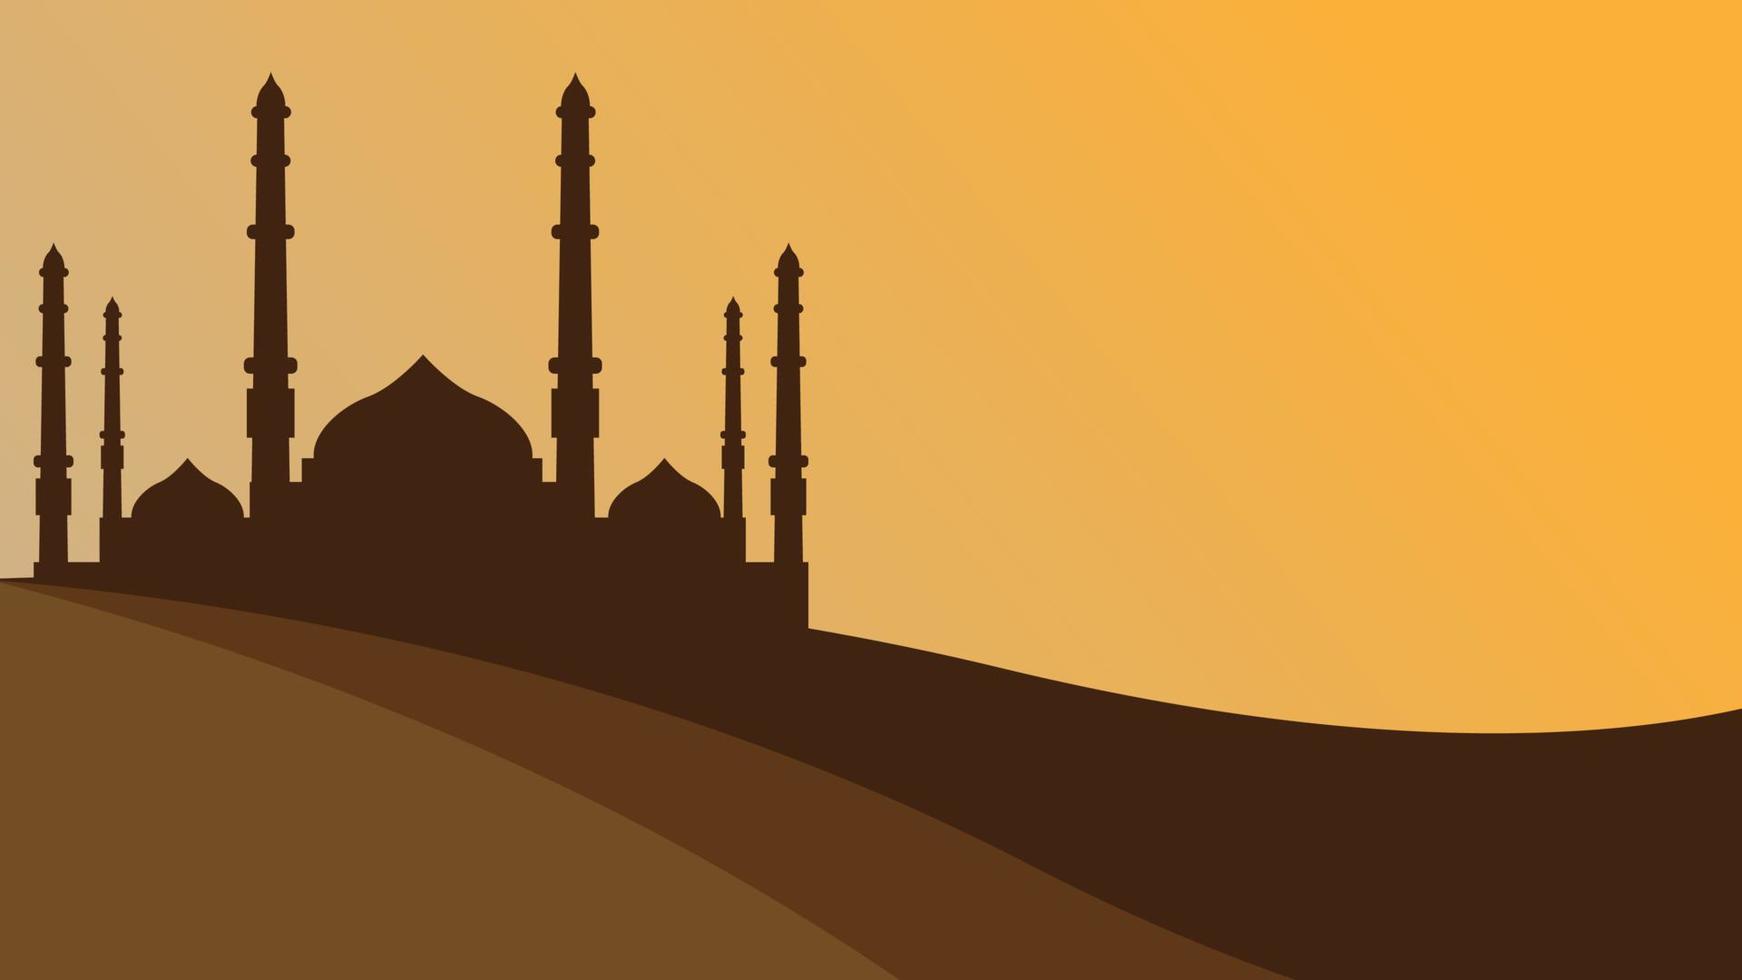 Silhouette der Moschee auf einem Hügel, geeignet für den islamischen Hintergrund. vektor